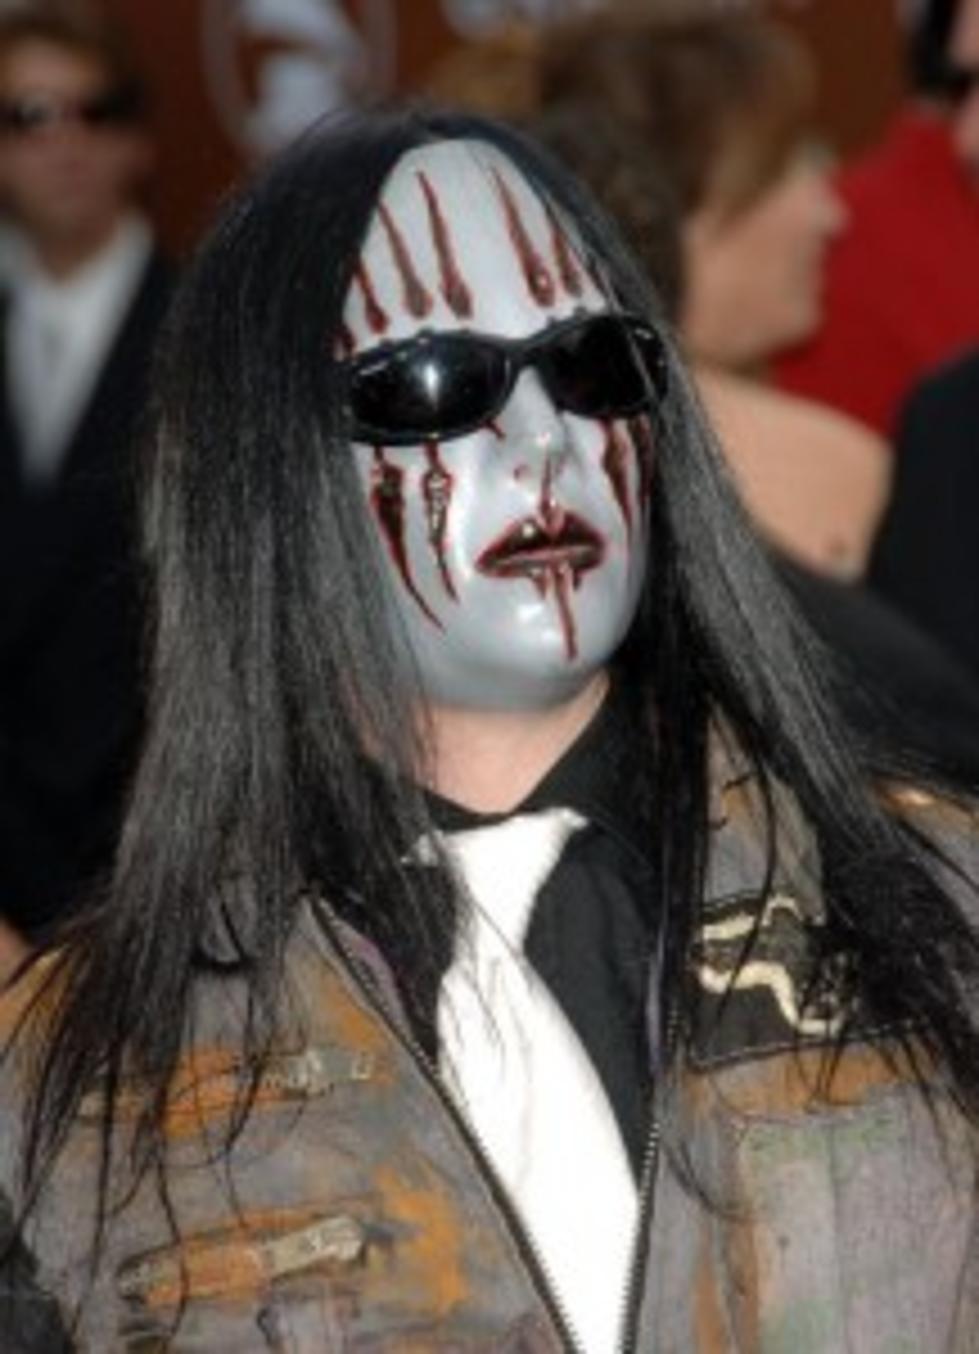 Joey Jordison Talks Future Of Slipknot